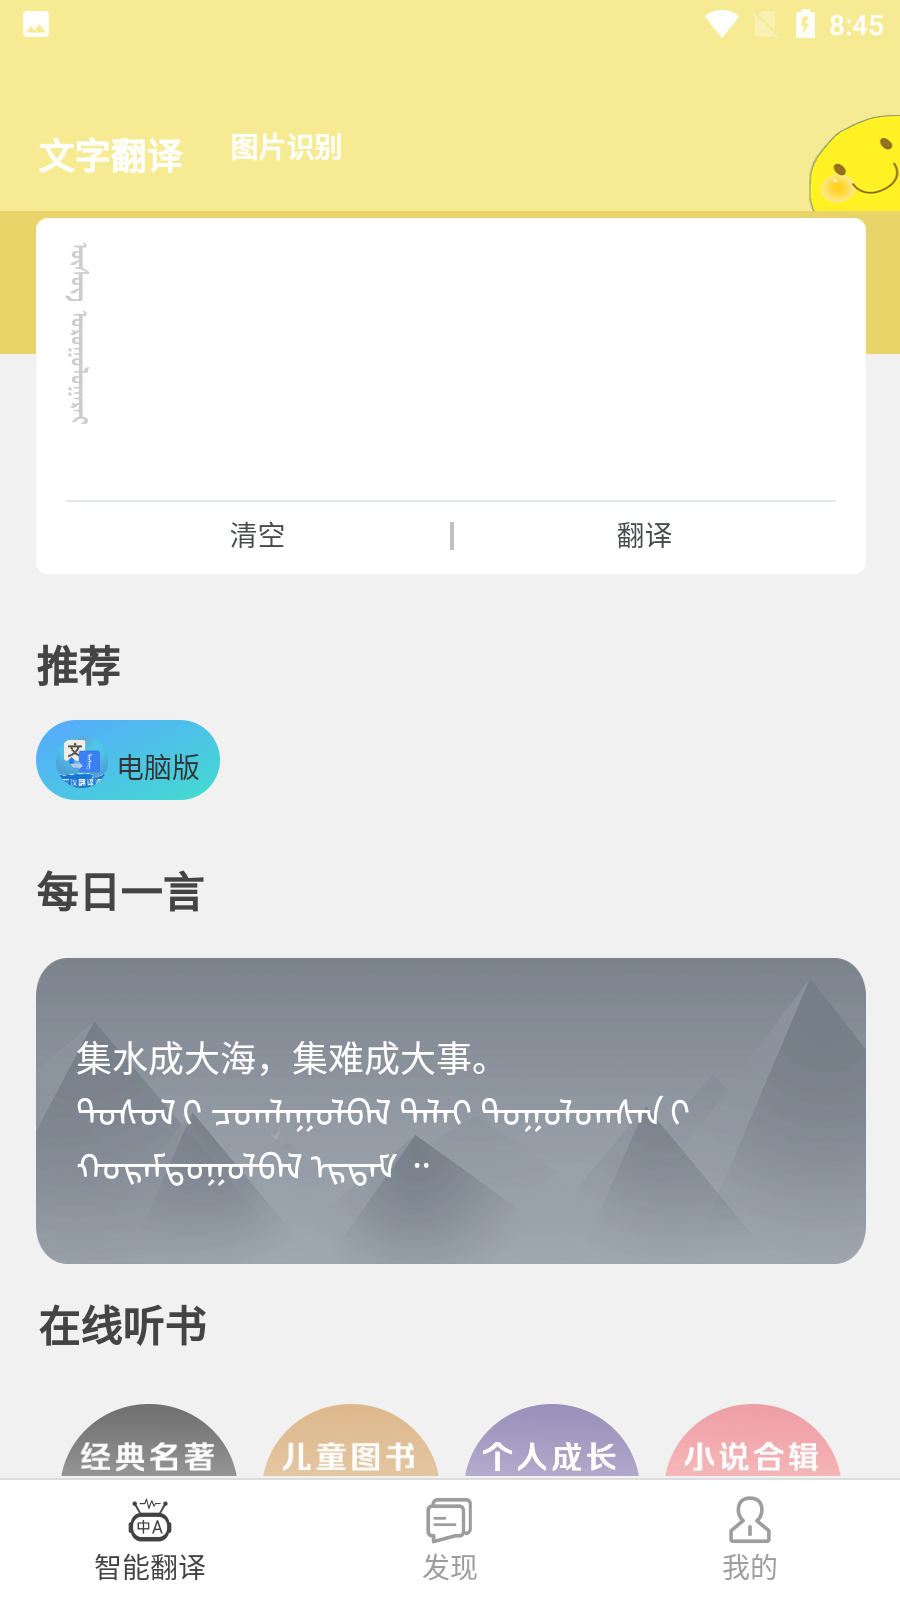 蒙古文翻译词典appv1.4.4